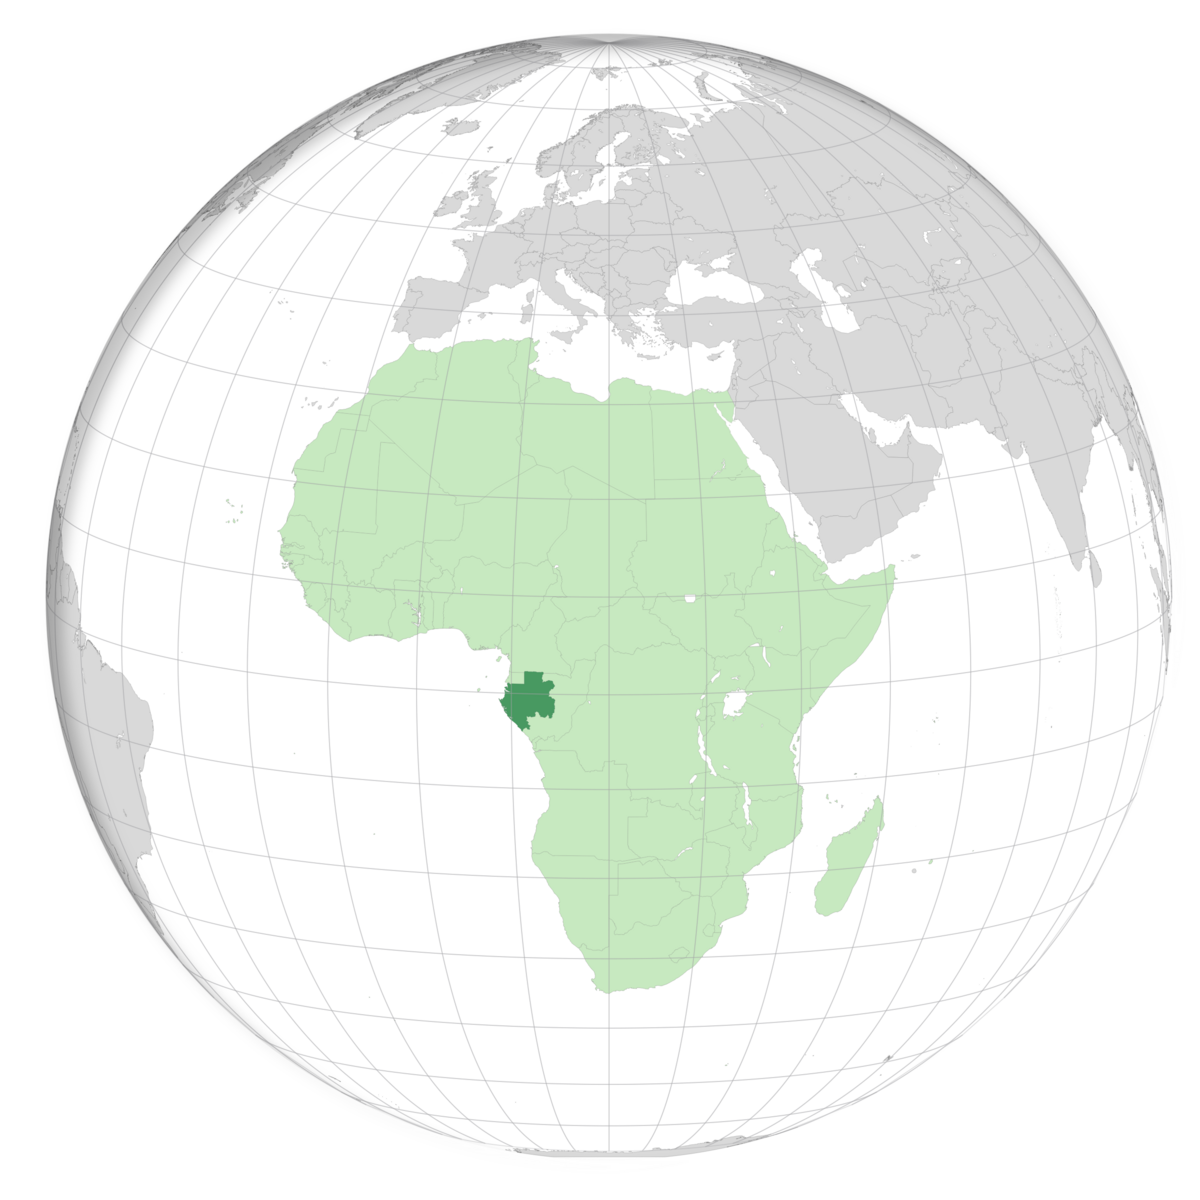 plassering av Gabon på jordkloden. Kart